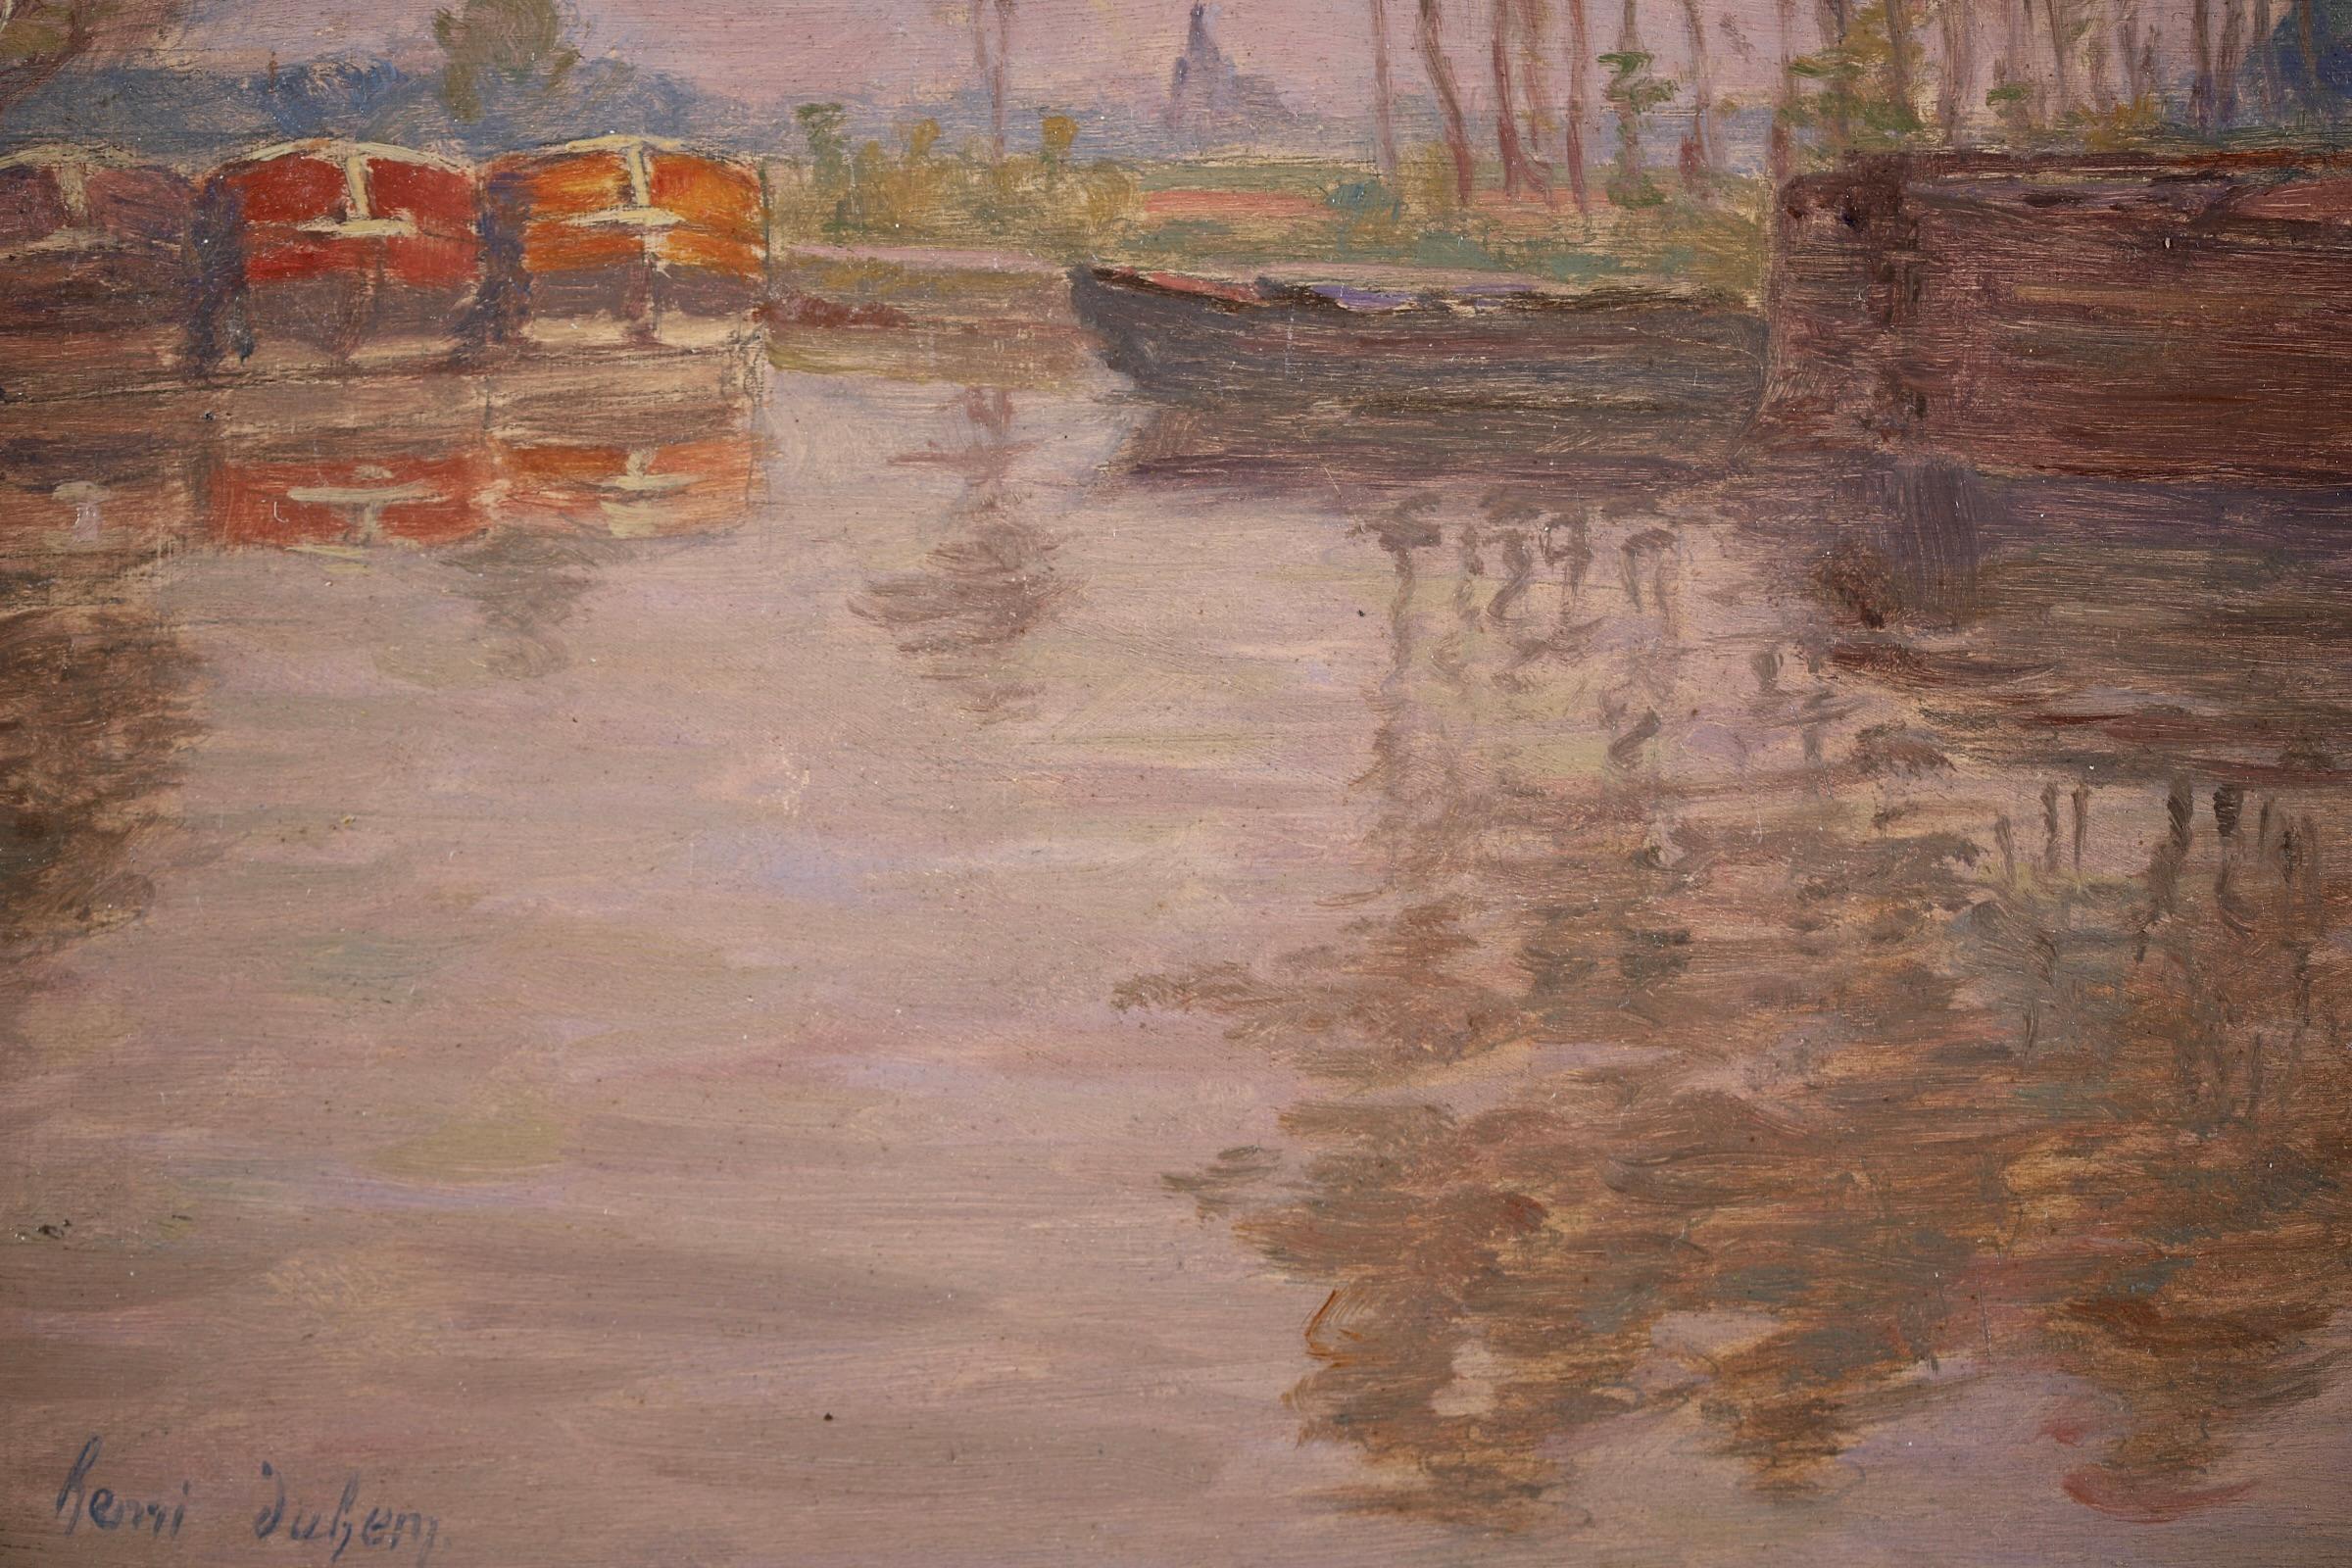 Barges on the River - Impressionist Oil, Boats in Landscape by Henri Duhem 6